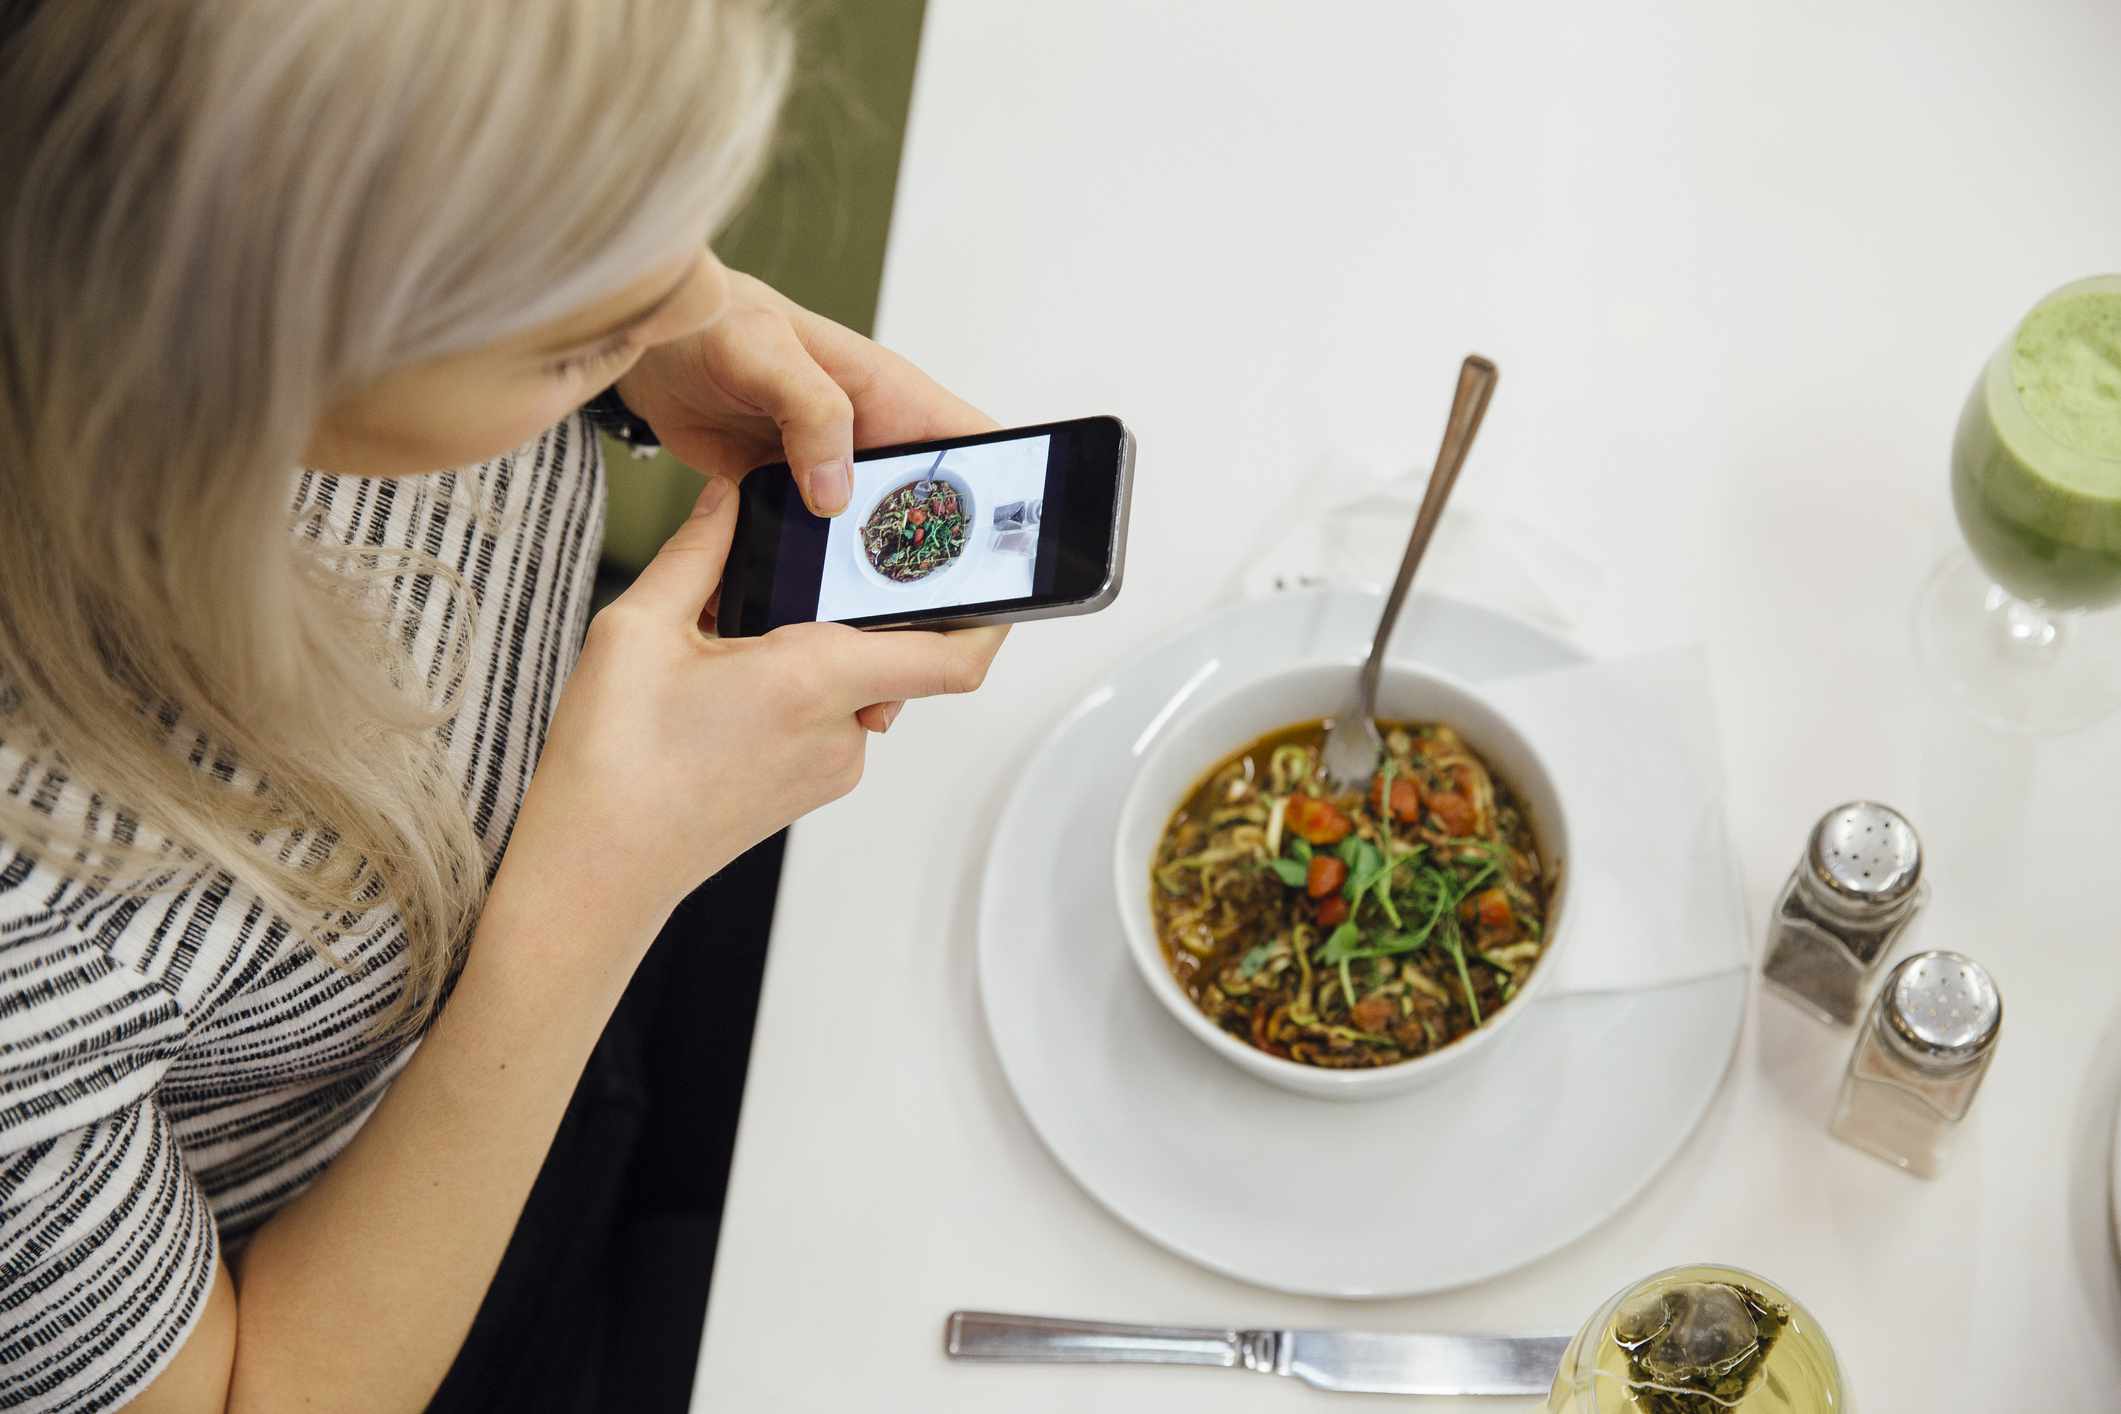 Pessoa tirando uma foto de sua refeição em um smartphone.